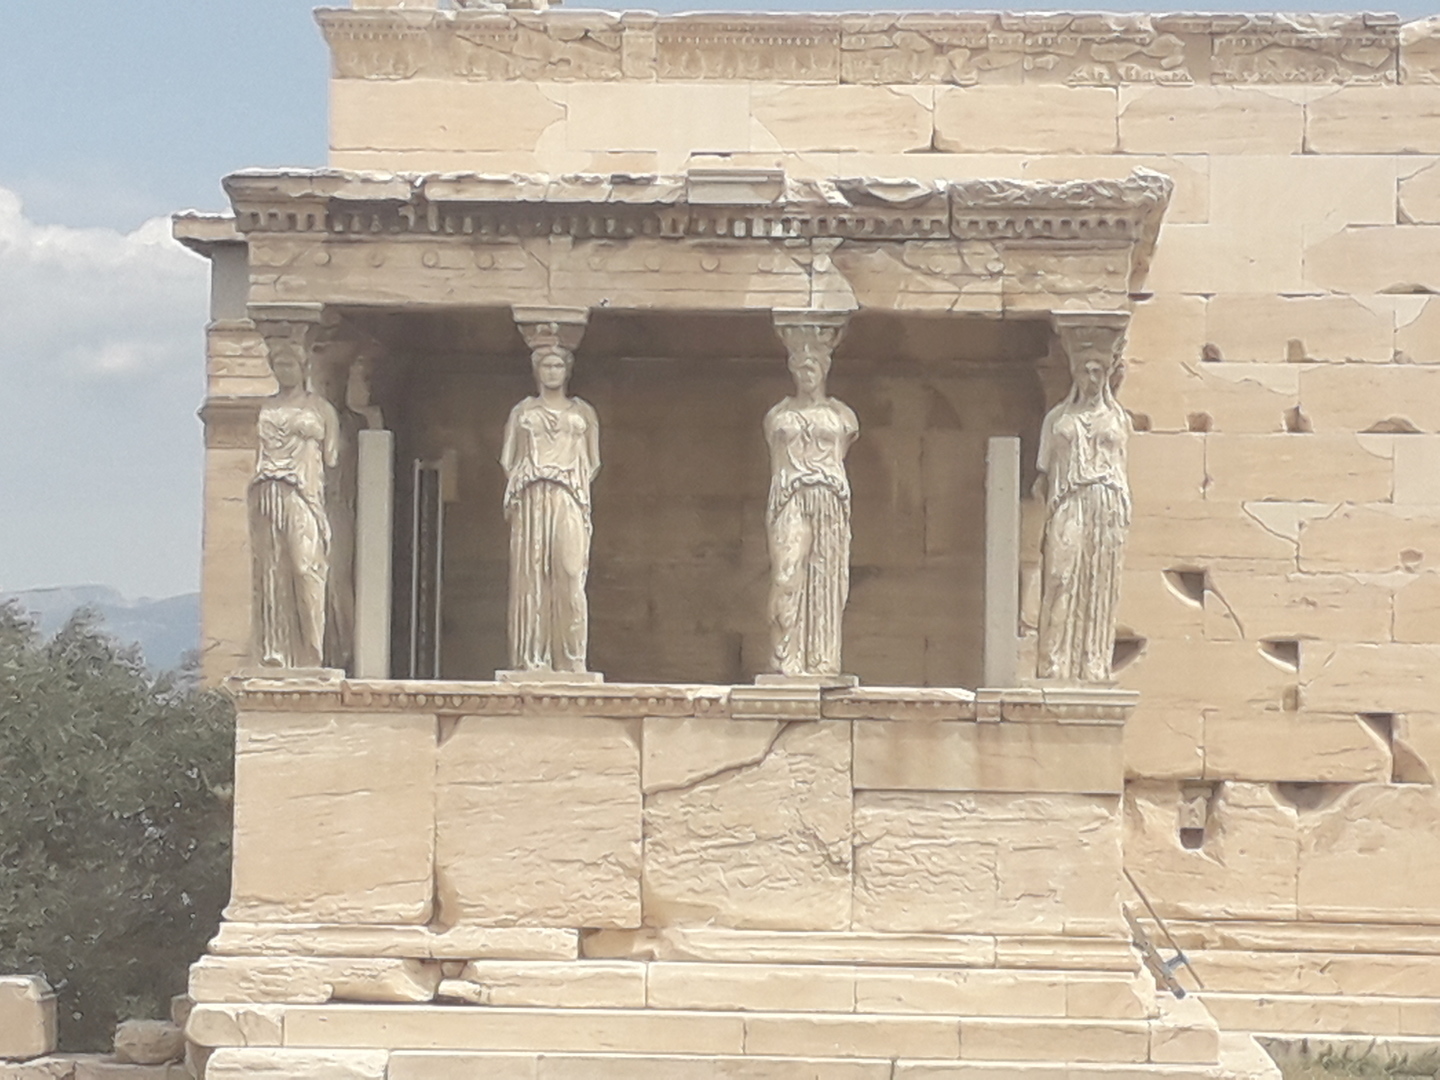 Image 28 : Façade d'un temple avec des statues sur lesquelles s'appuient un plafond